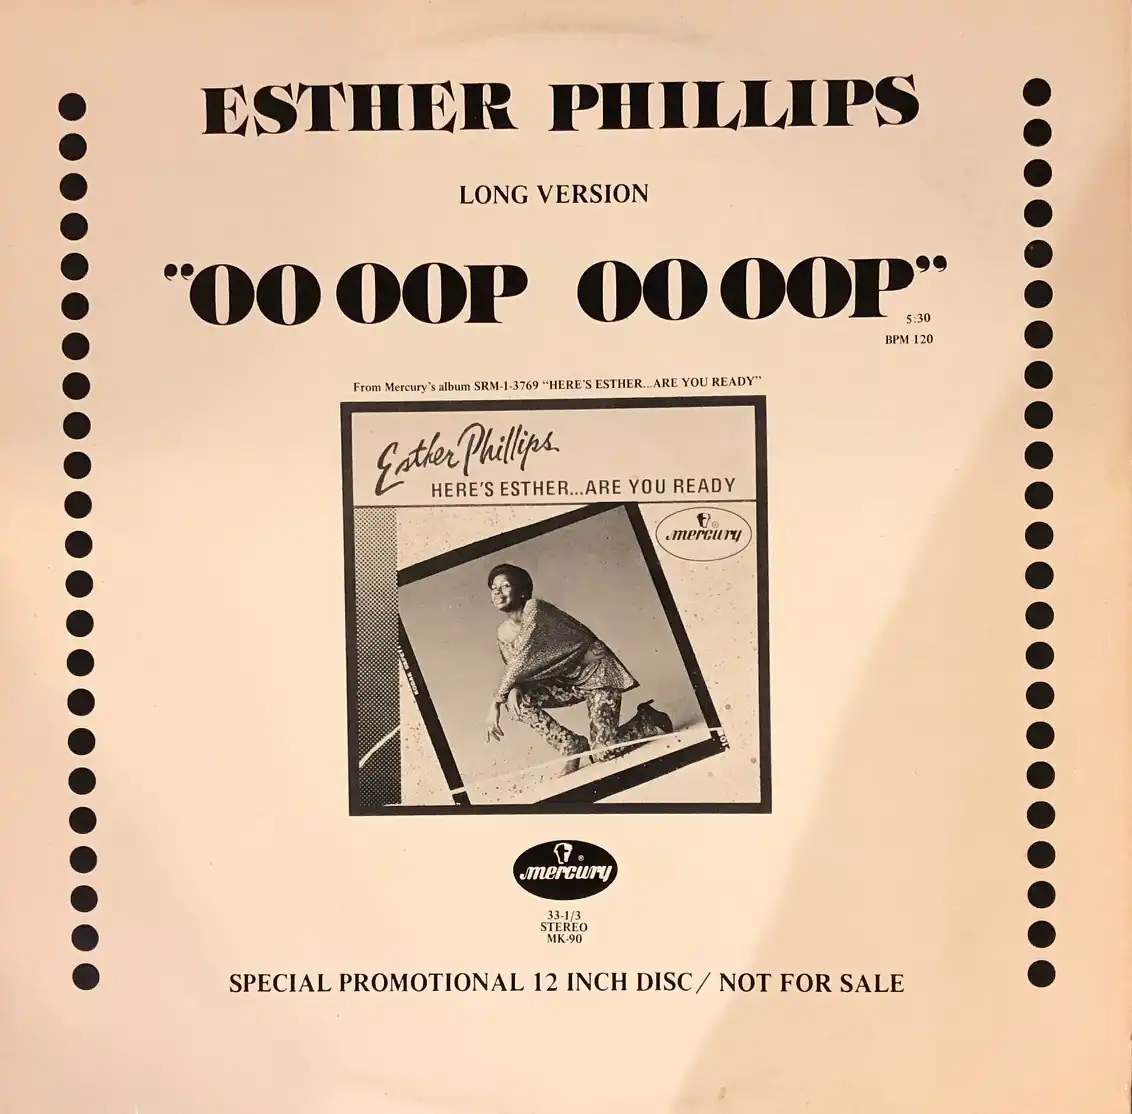 ESTHER PHILLIPS / OO OOP OO OOP